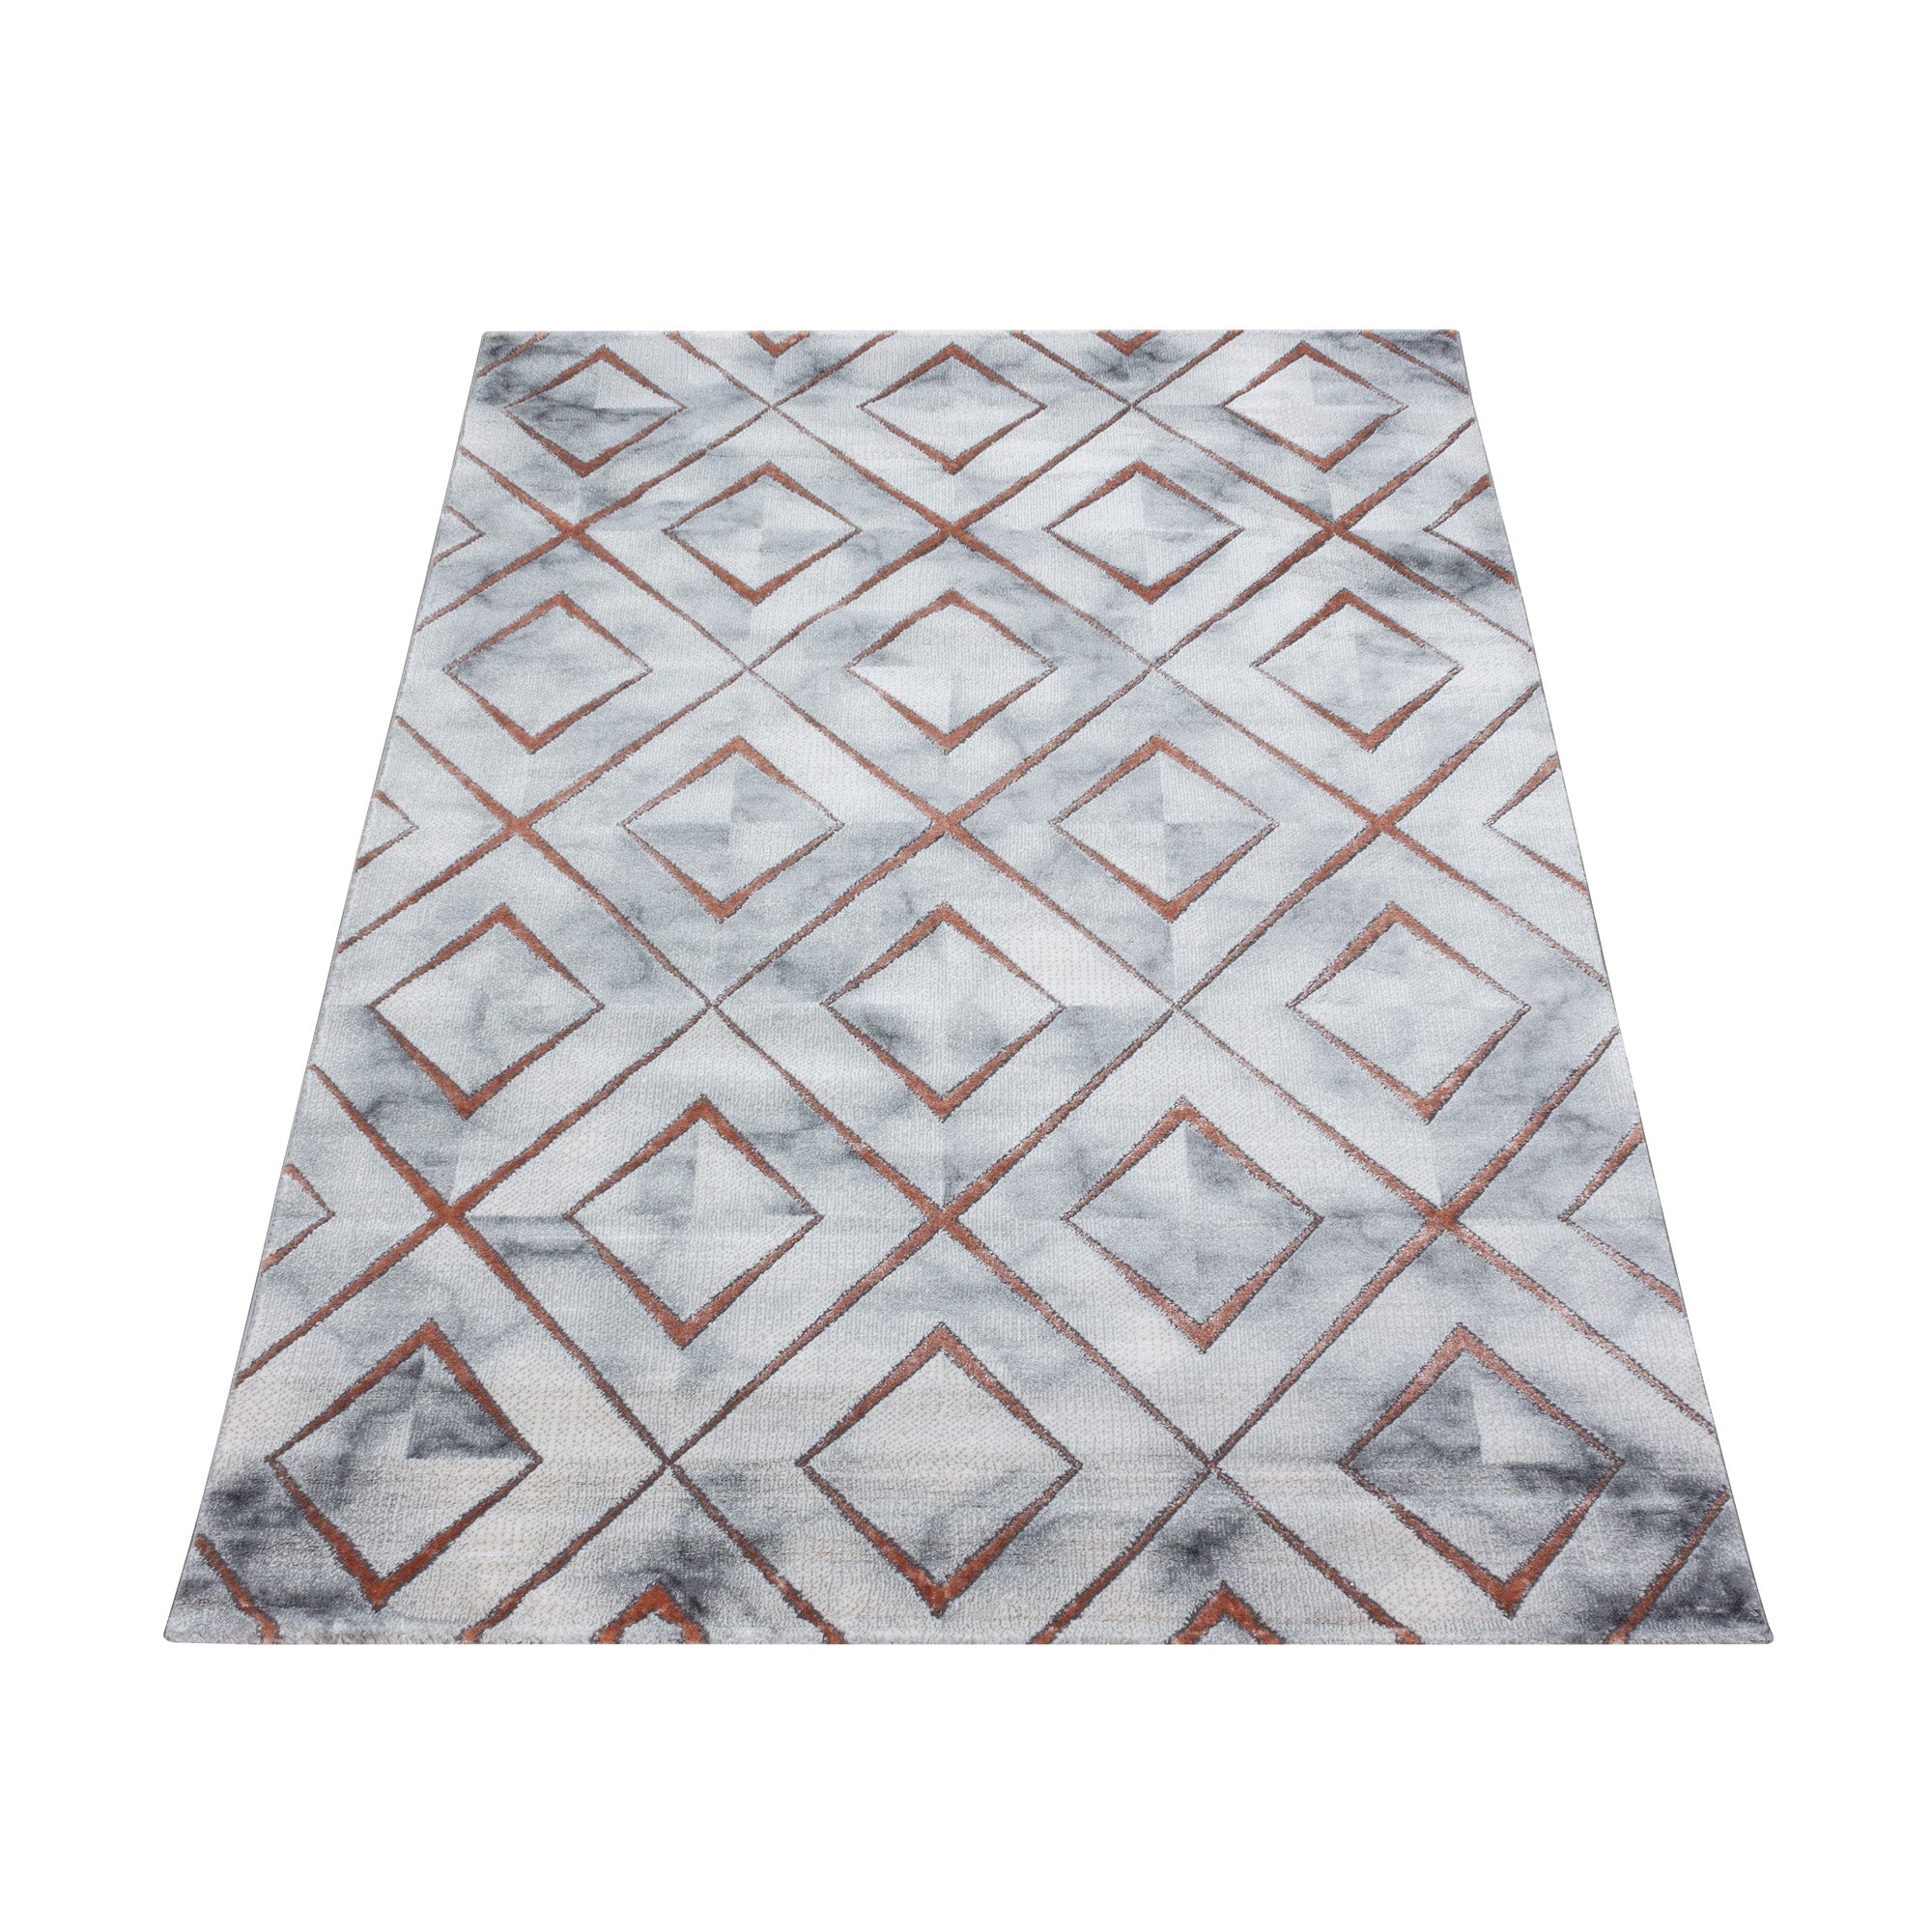 Kurzflor Design Teppich Wohnzimmerteppich Muster Marmoriert Raute Karo Bronze